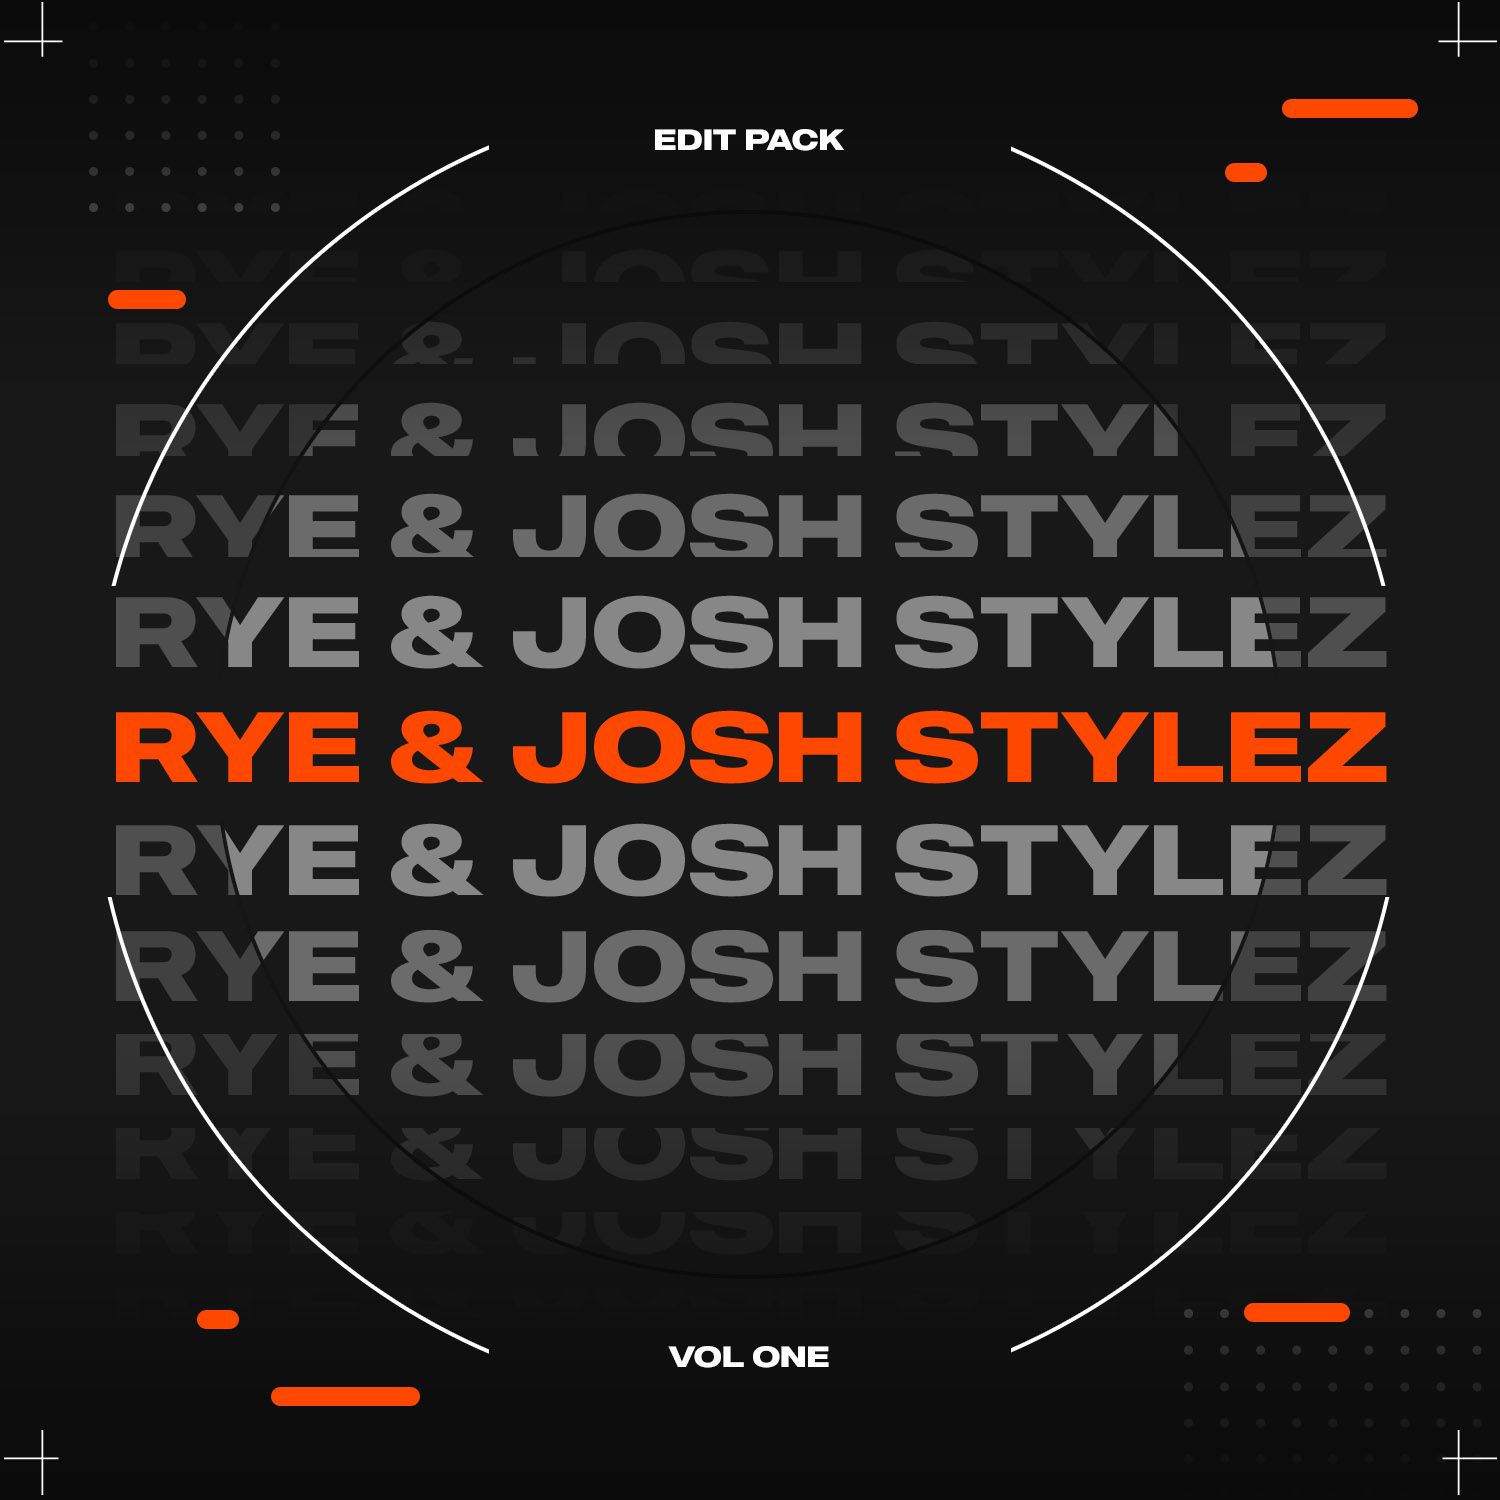 Rye & Josh Stylez Bootleg Pack